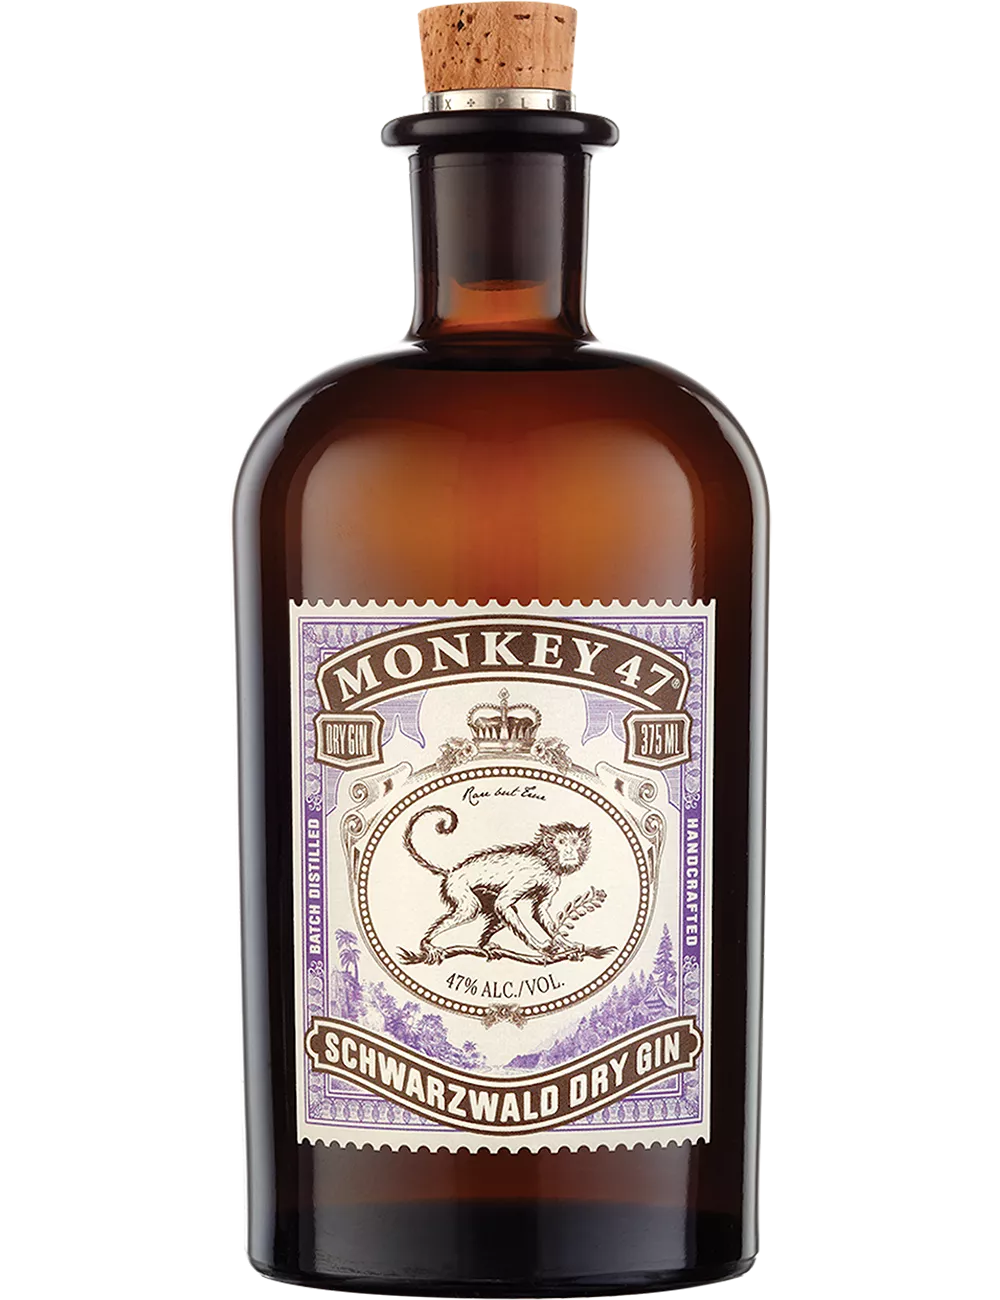 Monkey 47 - Distilled gin